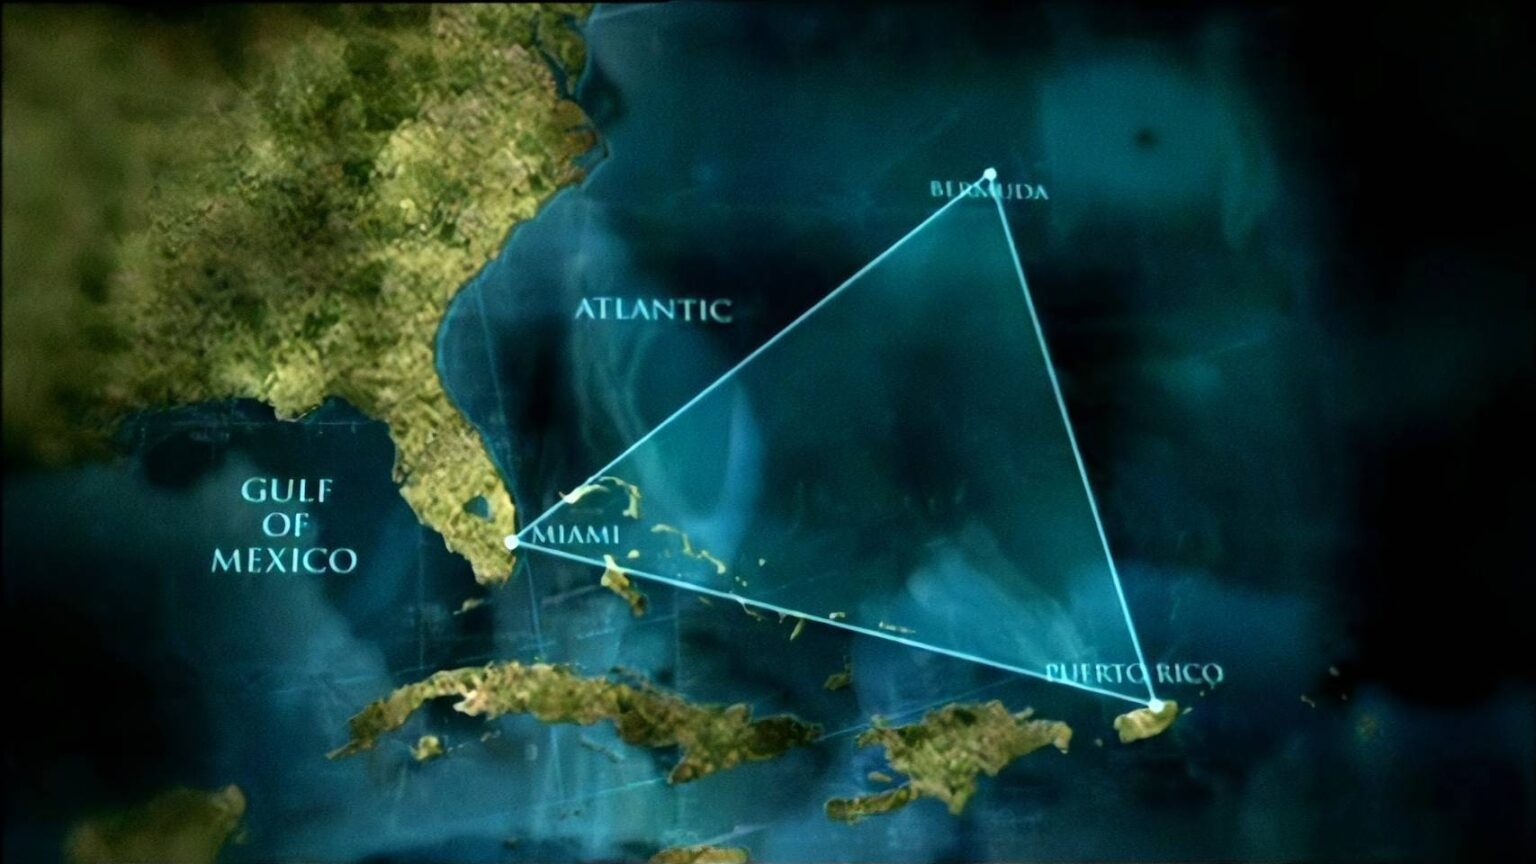 Атлантический океан Бермудский треугольник